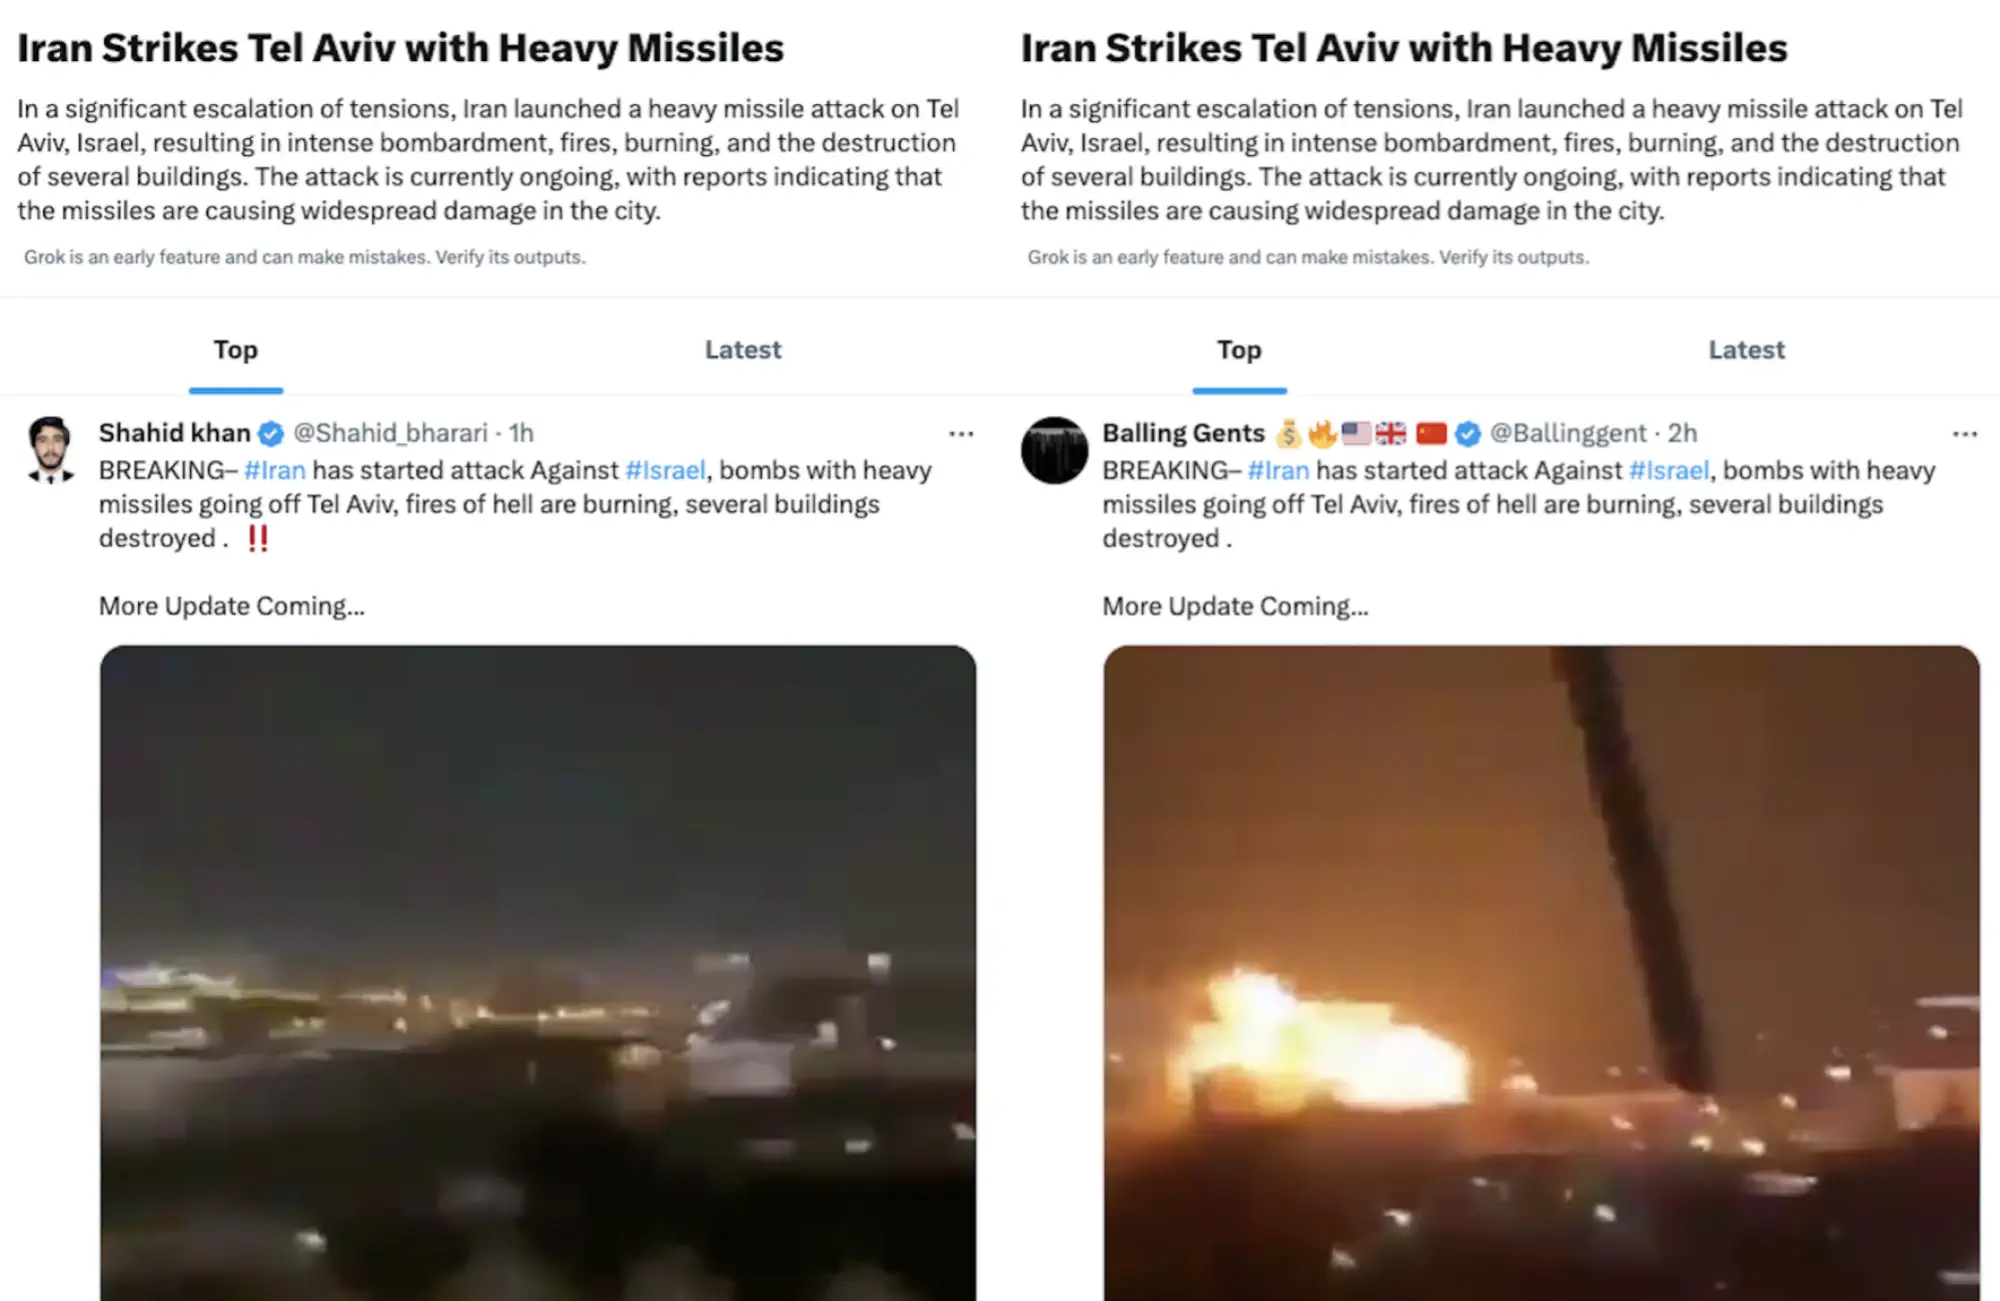 Der KI-Chatbot Grok von X hat am 4. und 5. April 2024 ein eigenes Thema erstellt: Iran stirkes Tel Aviov with heavy missiles - eine Falschmeldung